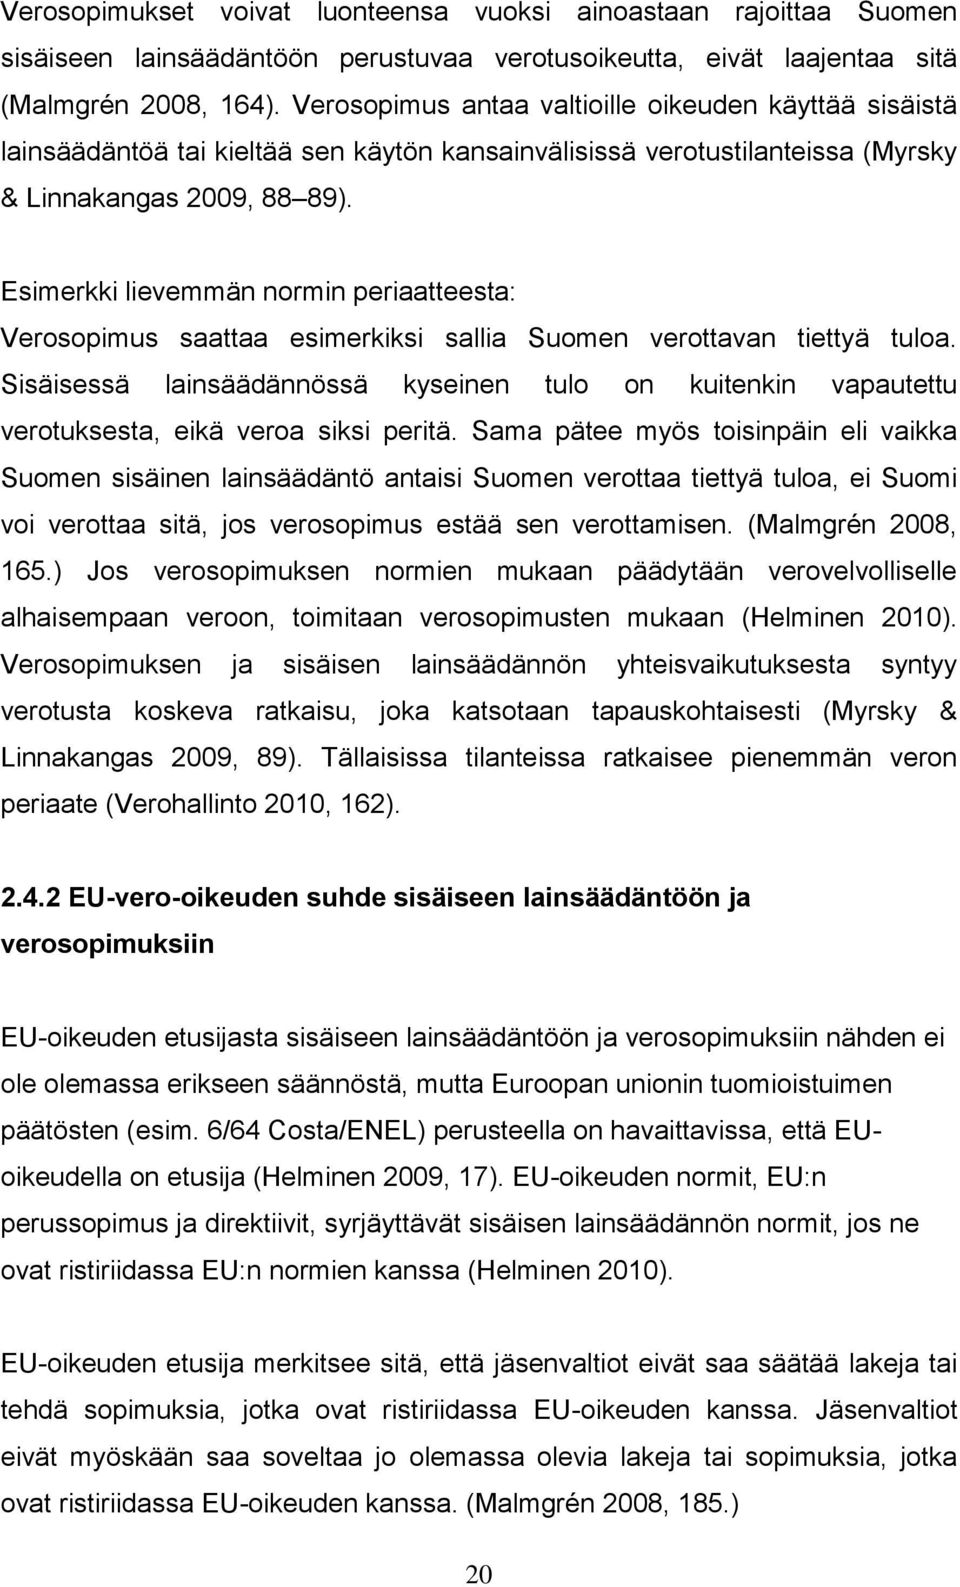 Esimerkki lievemmän normin periaatteesta: Verosopimus saattaa esimerkiksi sallia Suomen verottavan tiettyä tuloa.